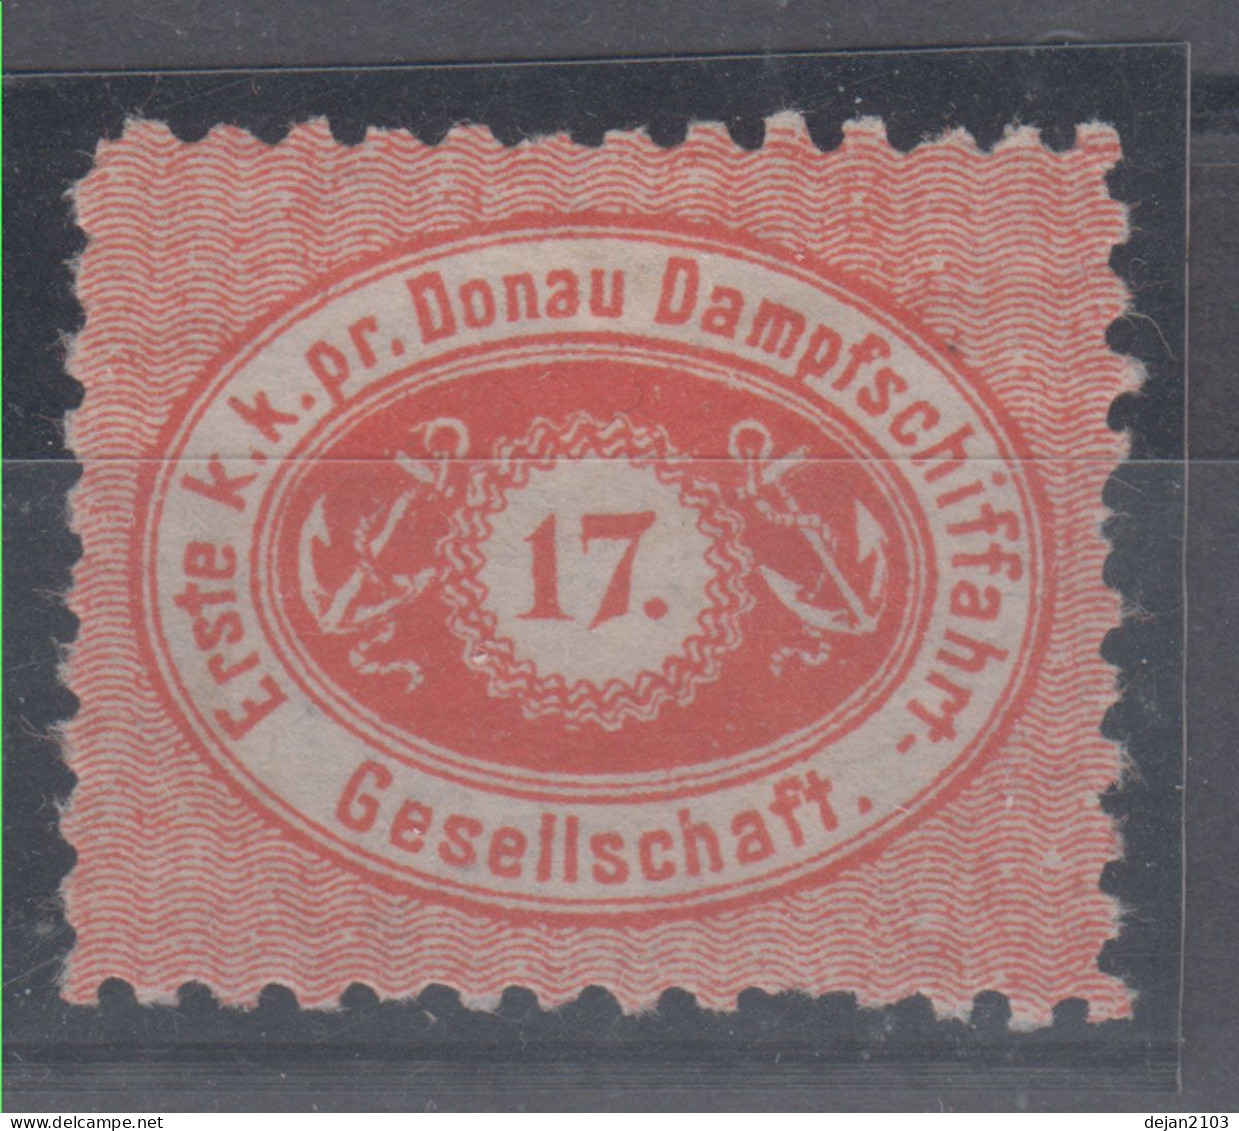 Austria Post Der Ersten K.k. Priv. Donau-Dampfschiffahrts-Gessellschaft 17 Kr Perforation 9 1/2 Mi#1B 1866/7 MH * - Neufs